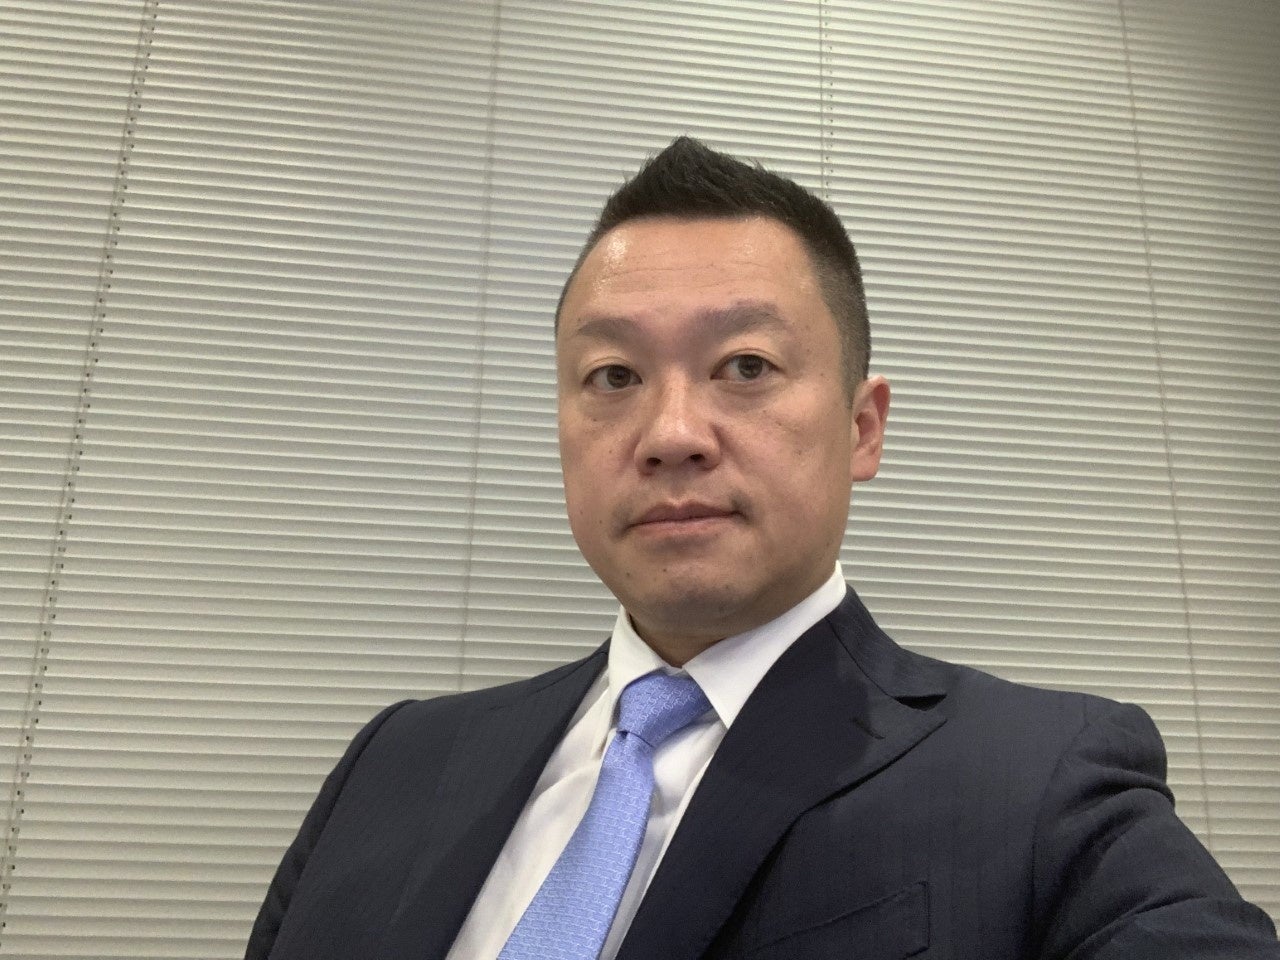 デジタルバンキング分野のリーディングカンパニーであるMoneythor Pte. Ltd. (本社：シンガポール、CEO：オリビエ・ベルティエ、以下「マネーソー」)は、日本法人の新代表者の就任を発表